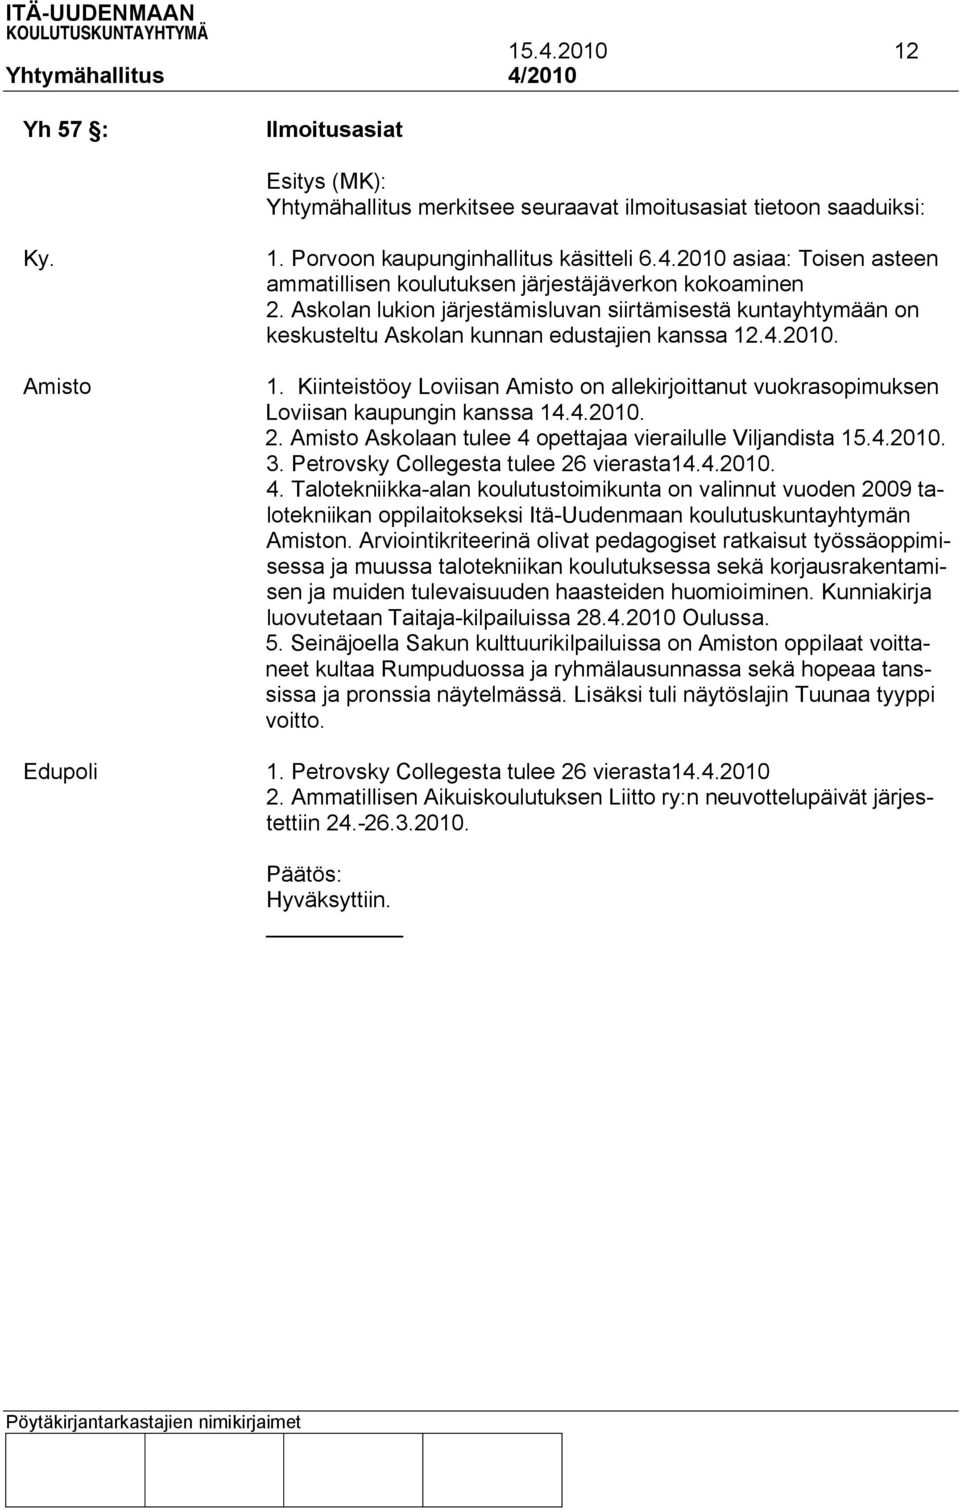 Kiinteistöoy Loviisan Amisto on allekirjoittanut vuokrasopimuksen Loviisan kaupungin kanssa 14.4.2010. 2. Amisto Askolaan tulee 4 opettajaa vierailulle Viljandista 15.4.2010. 3.